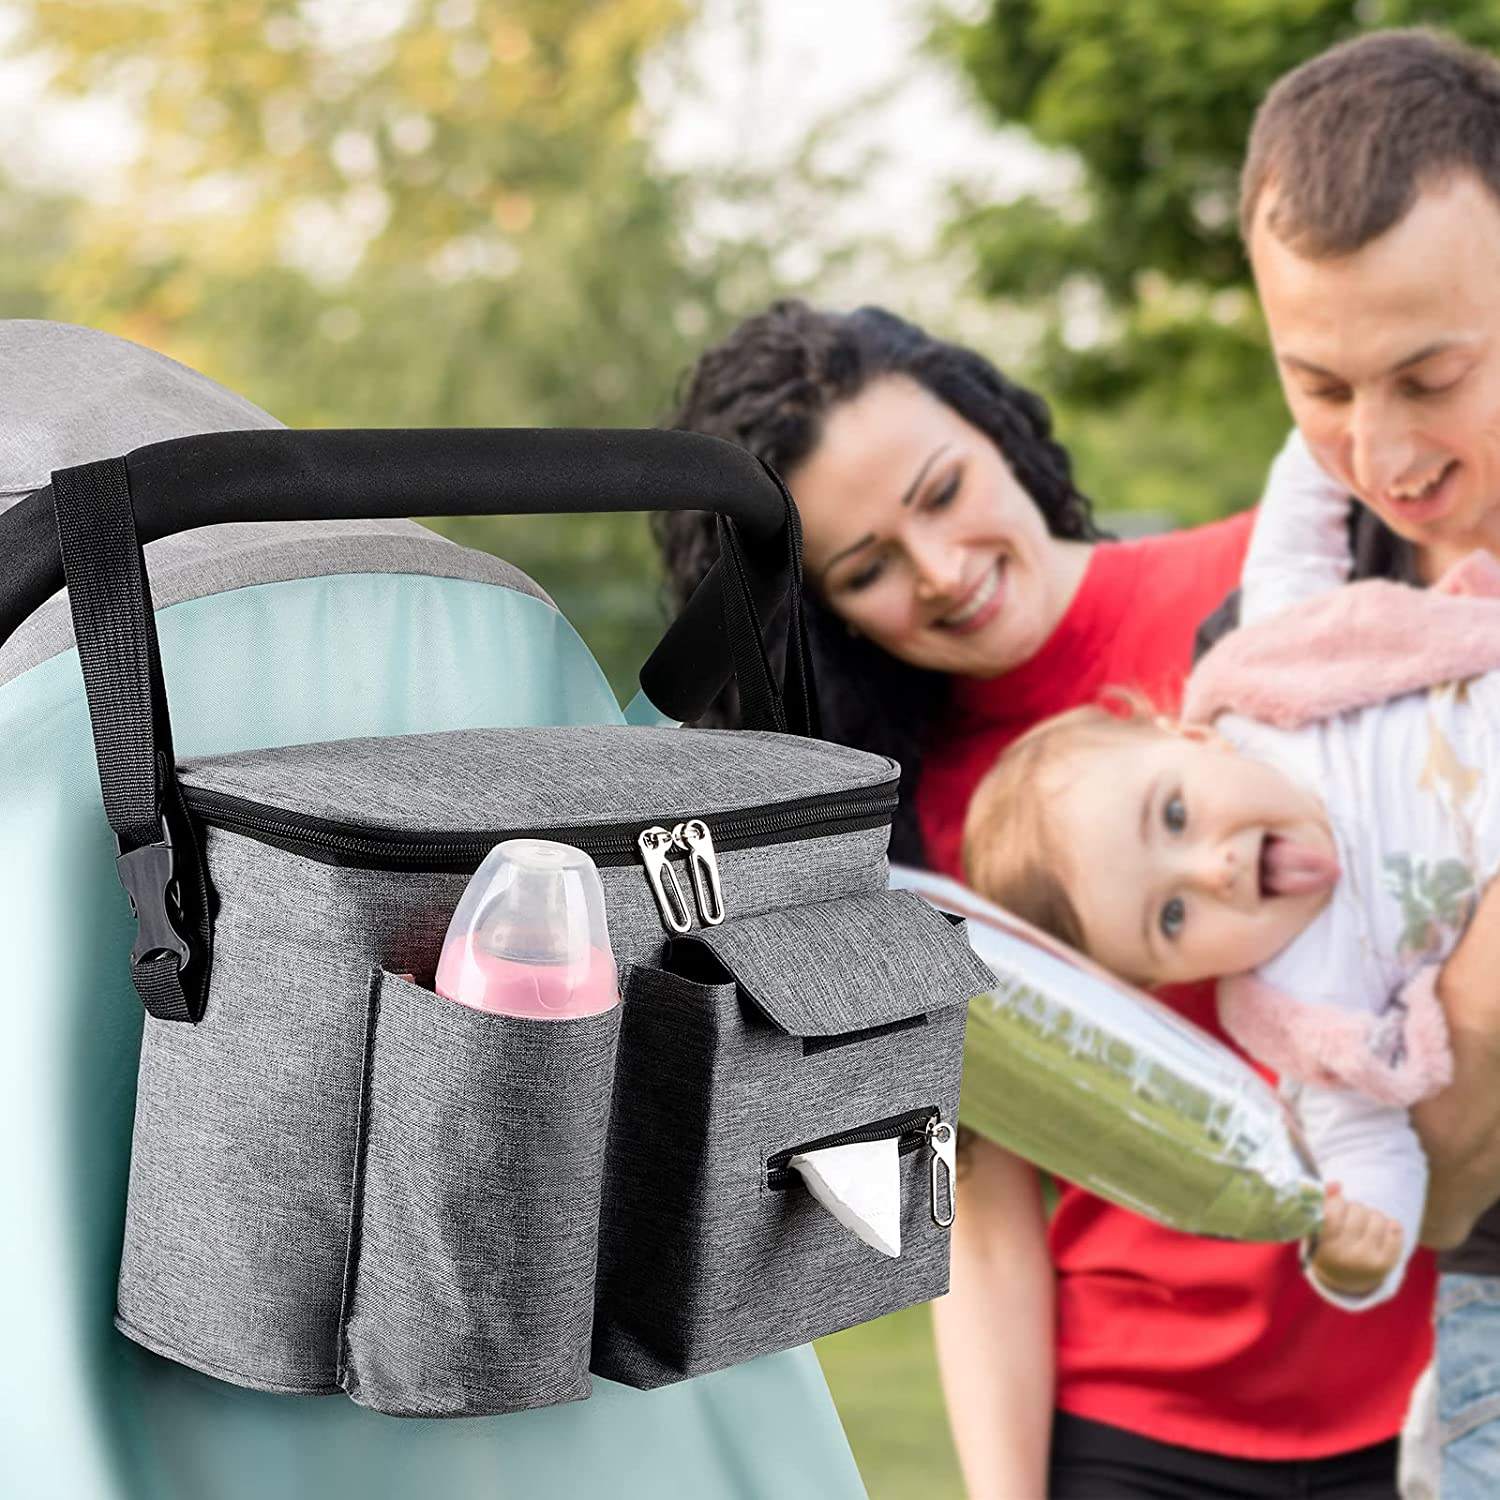 Customized Thermal Insulation Feeding Bottle Holder Bag Baby Stroller Organizer For Diaper Wet Tissue Toys